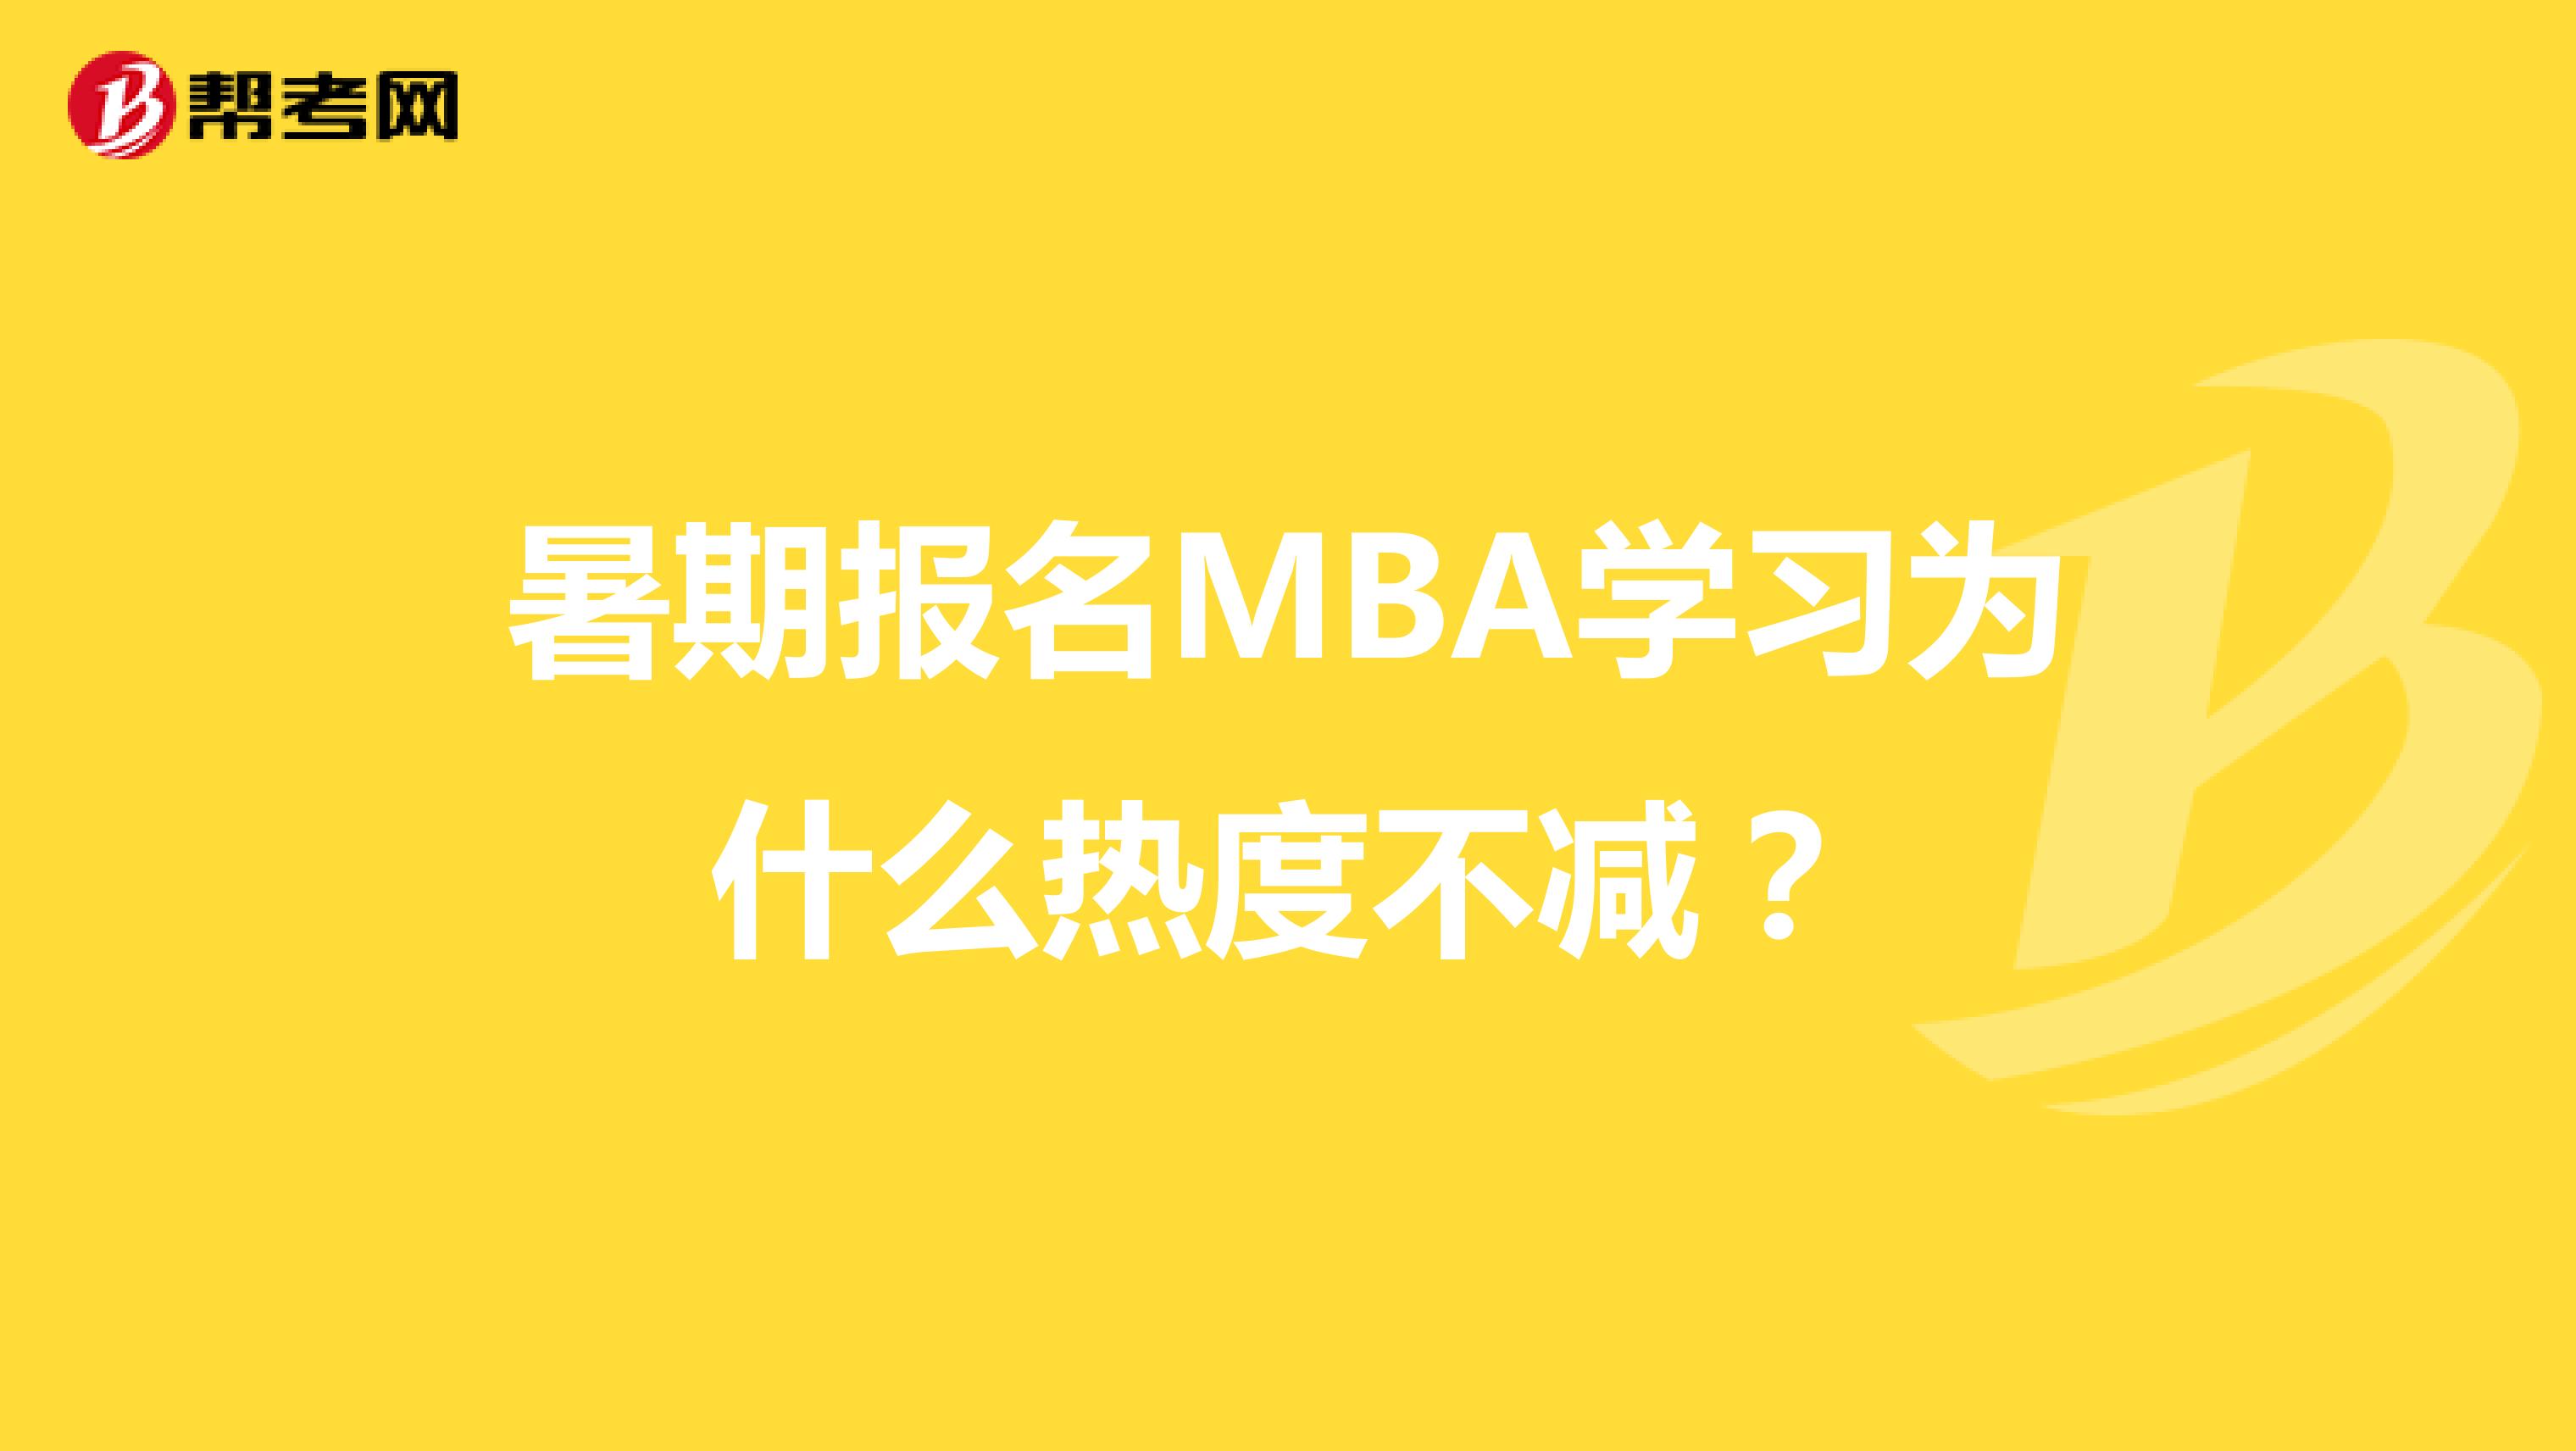 暑期報名MBA學習為什么熱度不減？